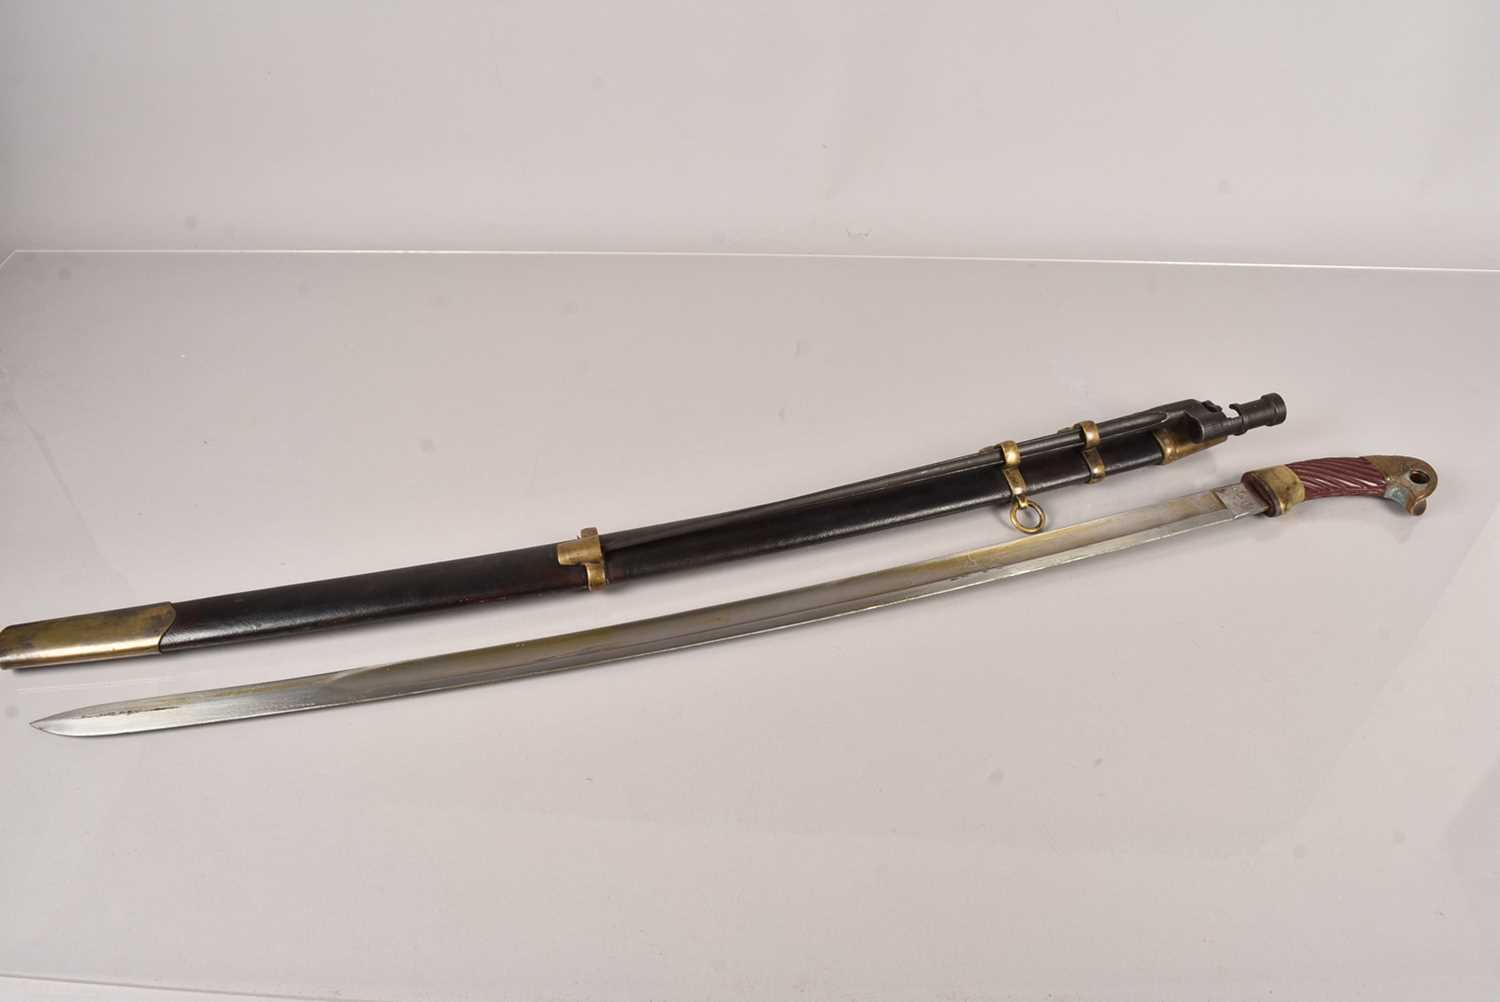 A Russian Shashka style sword,